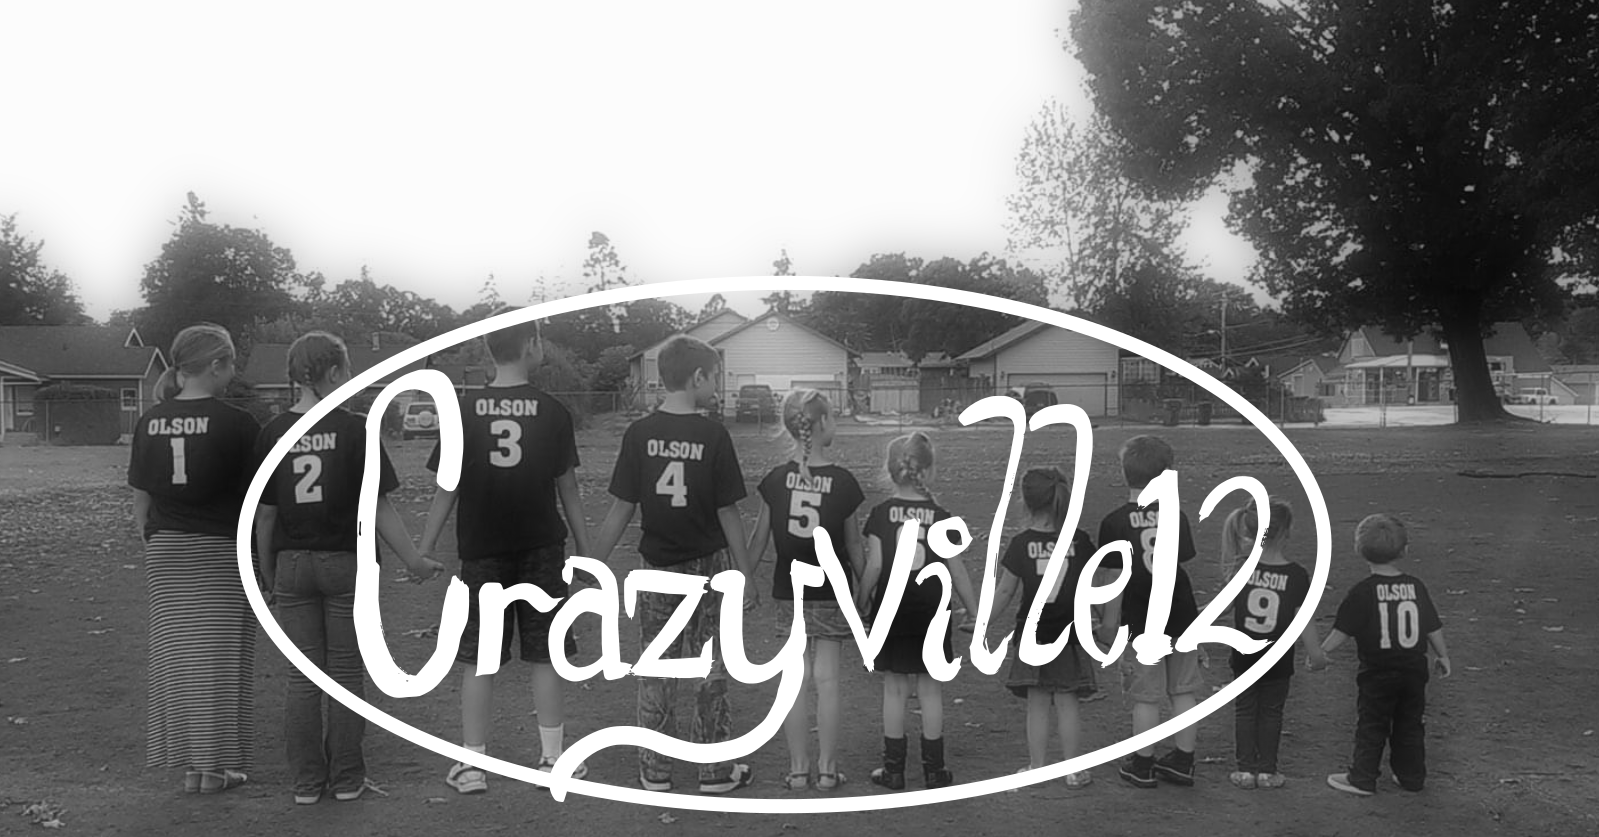 Crazyville12